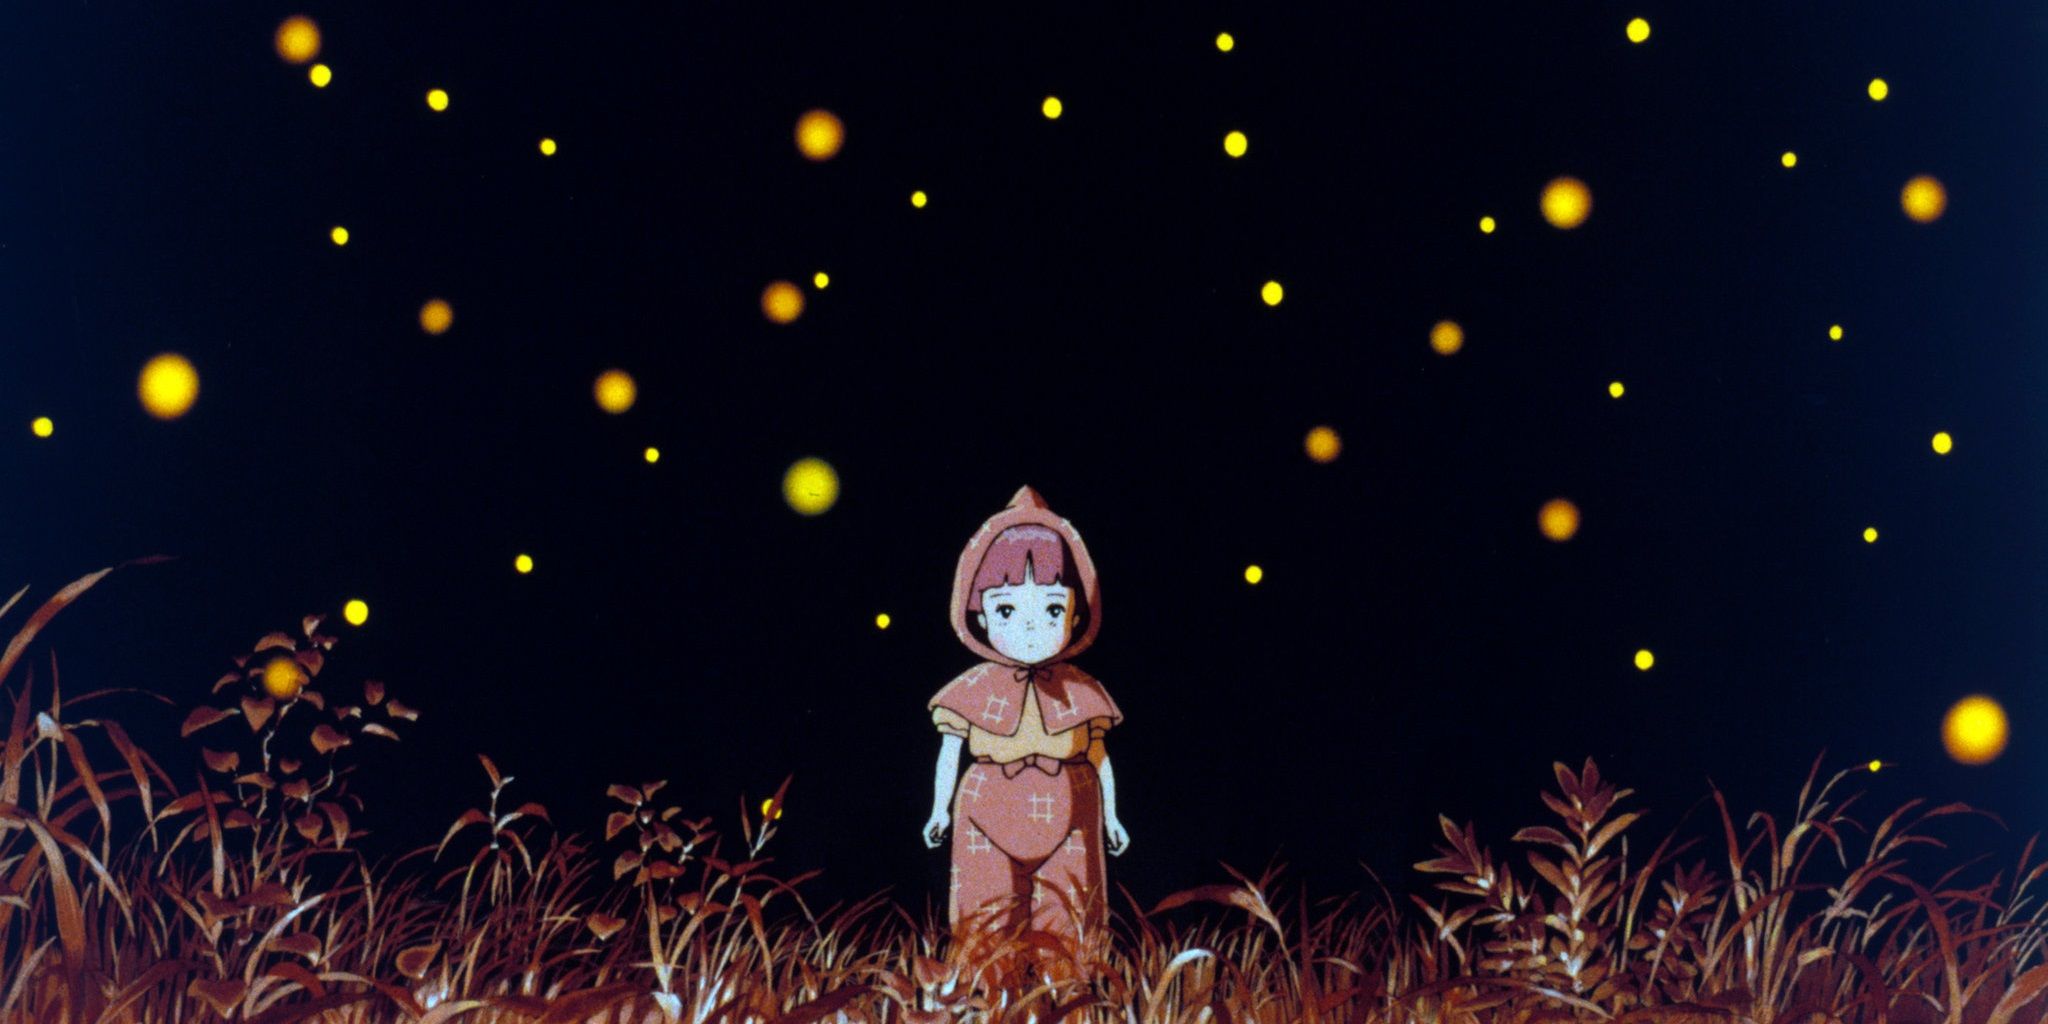 Setsuko em pé entre os vaga-lumes no Túmulo dos Vaga-lumes